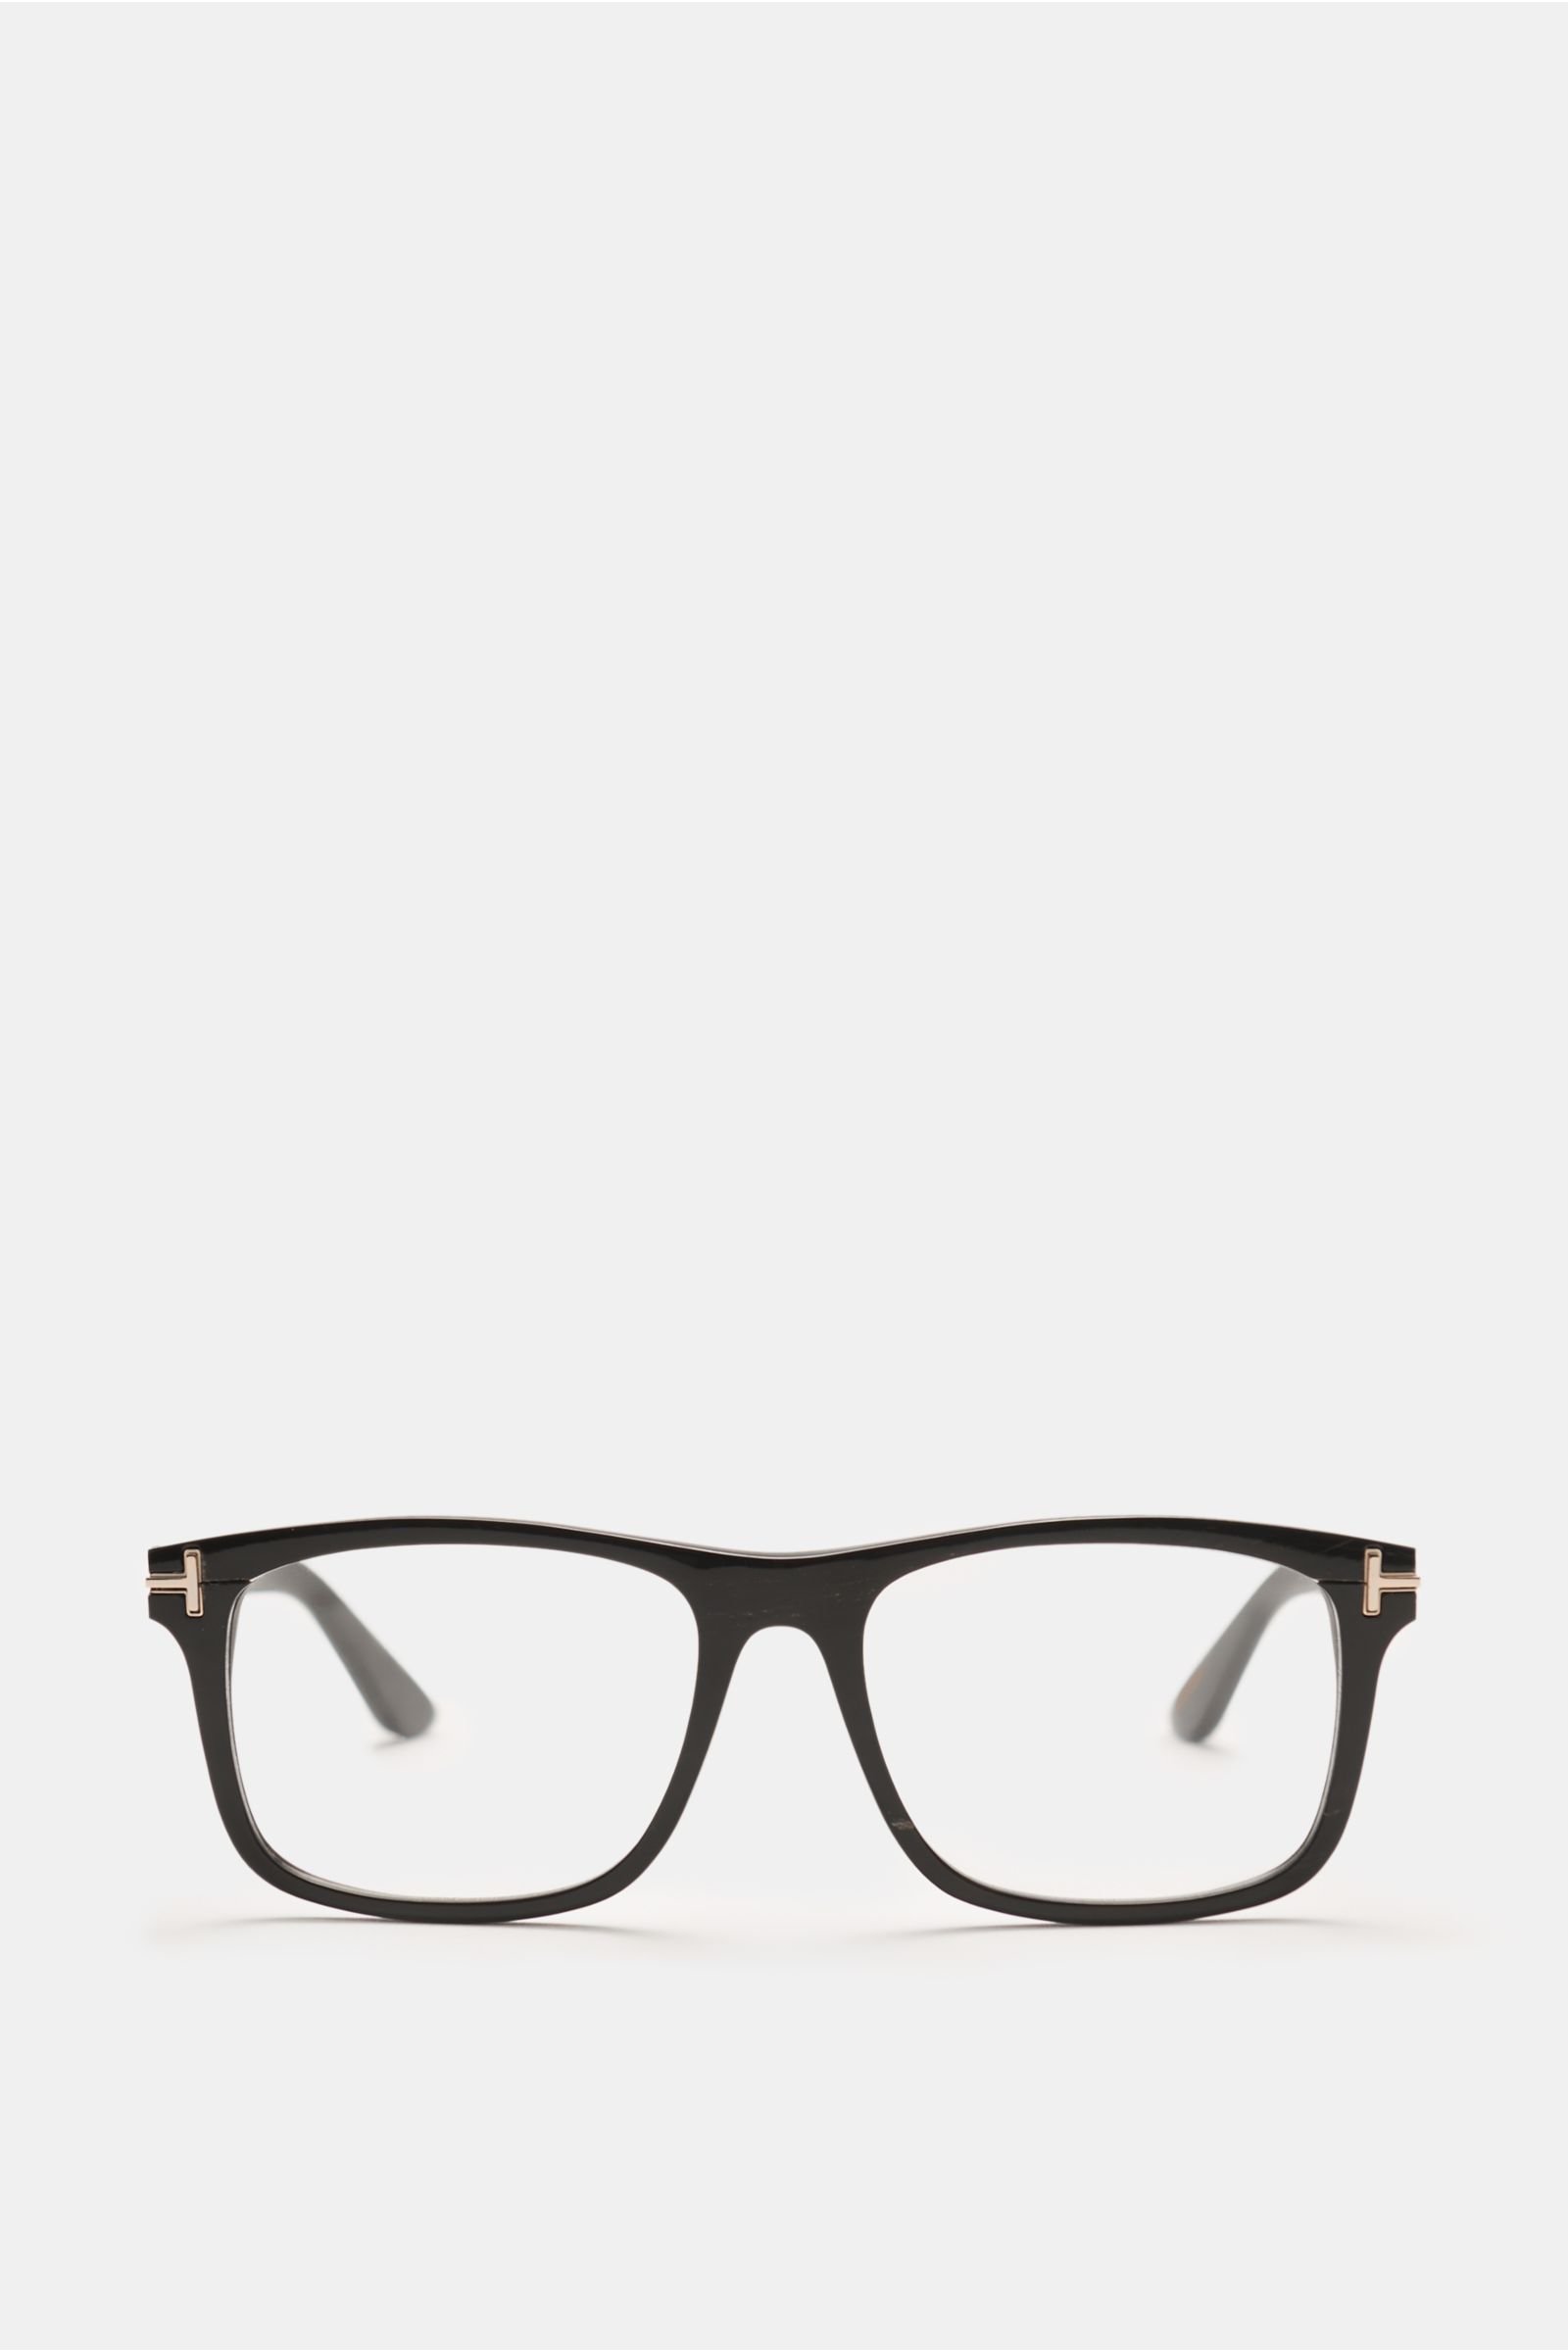 TOM FORD glasses frame 'Square Horn Optical' black | BRAUN Hamburg